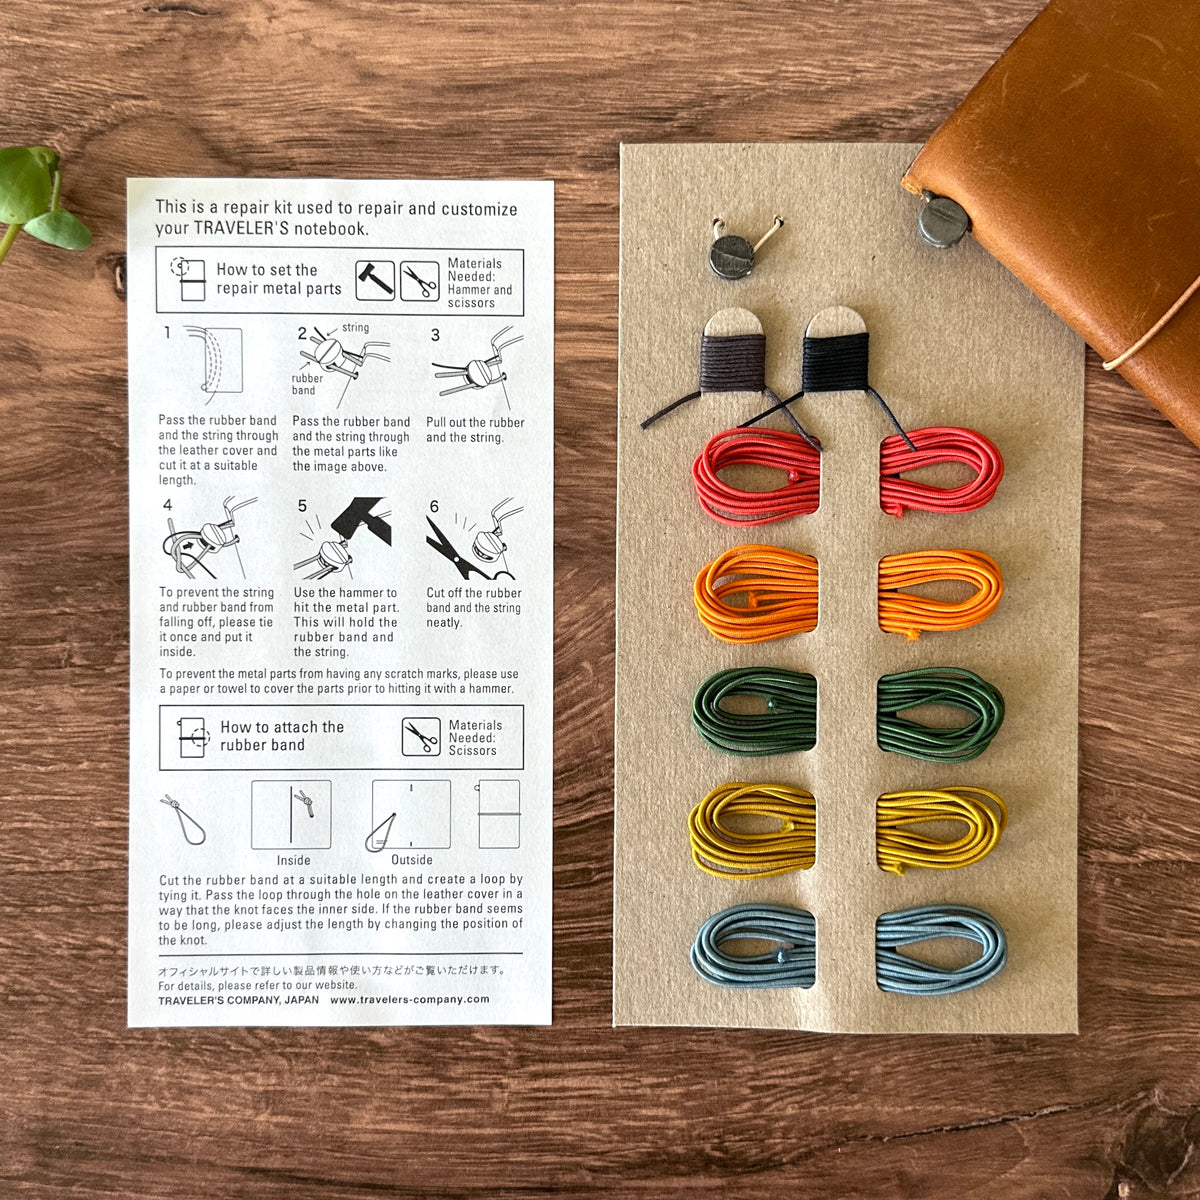 [TRC] 010 // Repair Kit (Spare Colors)